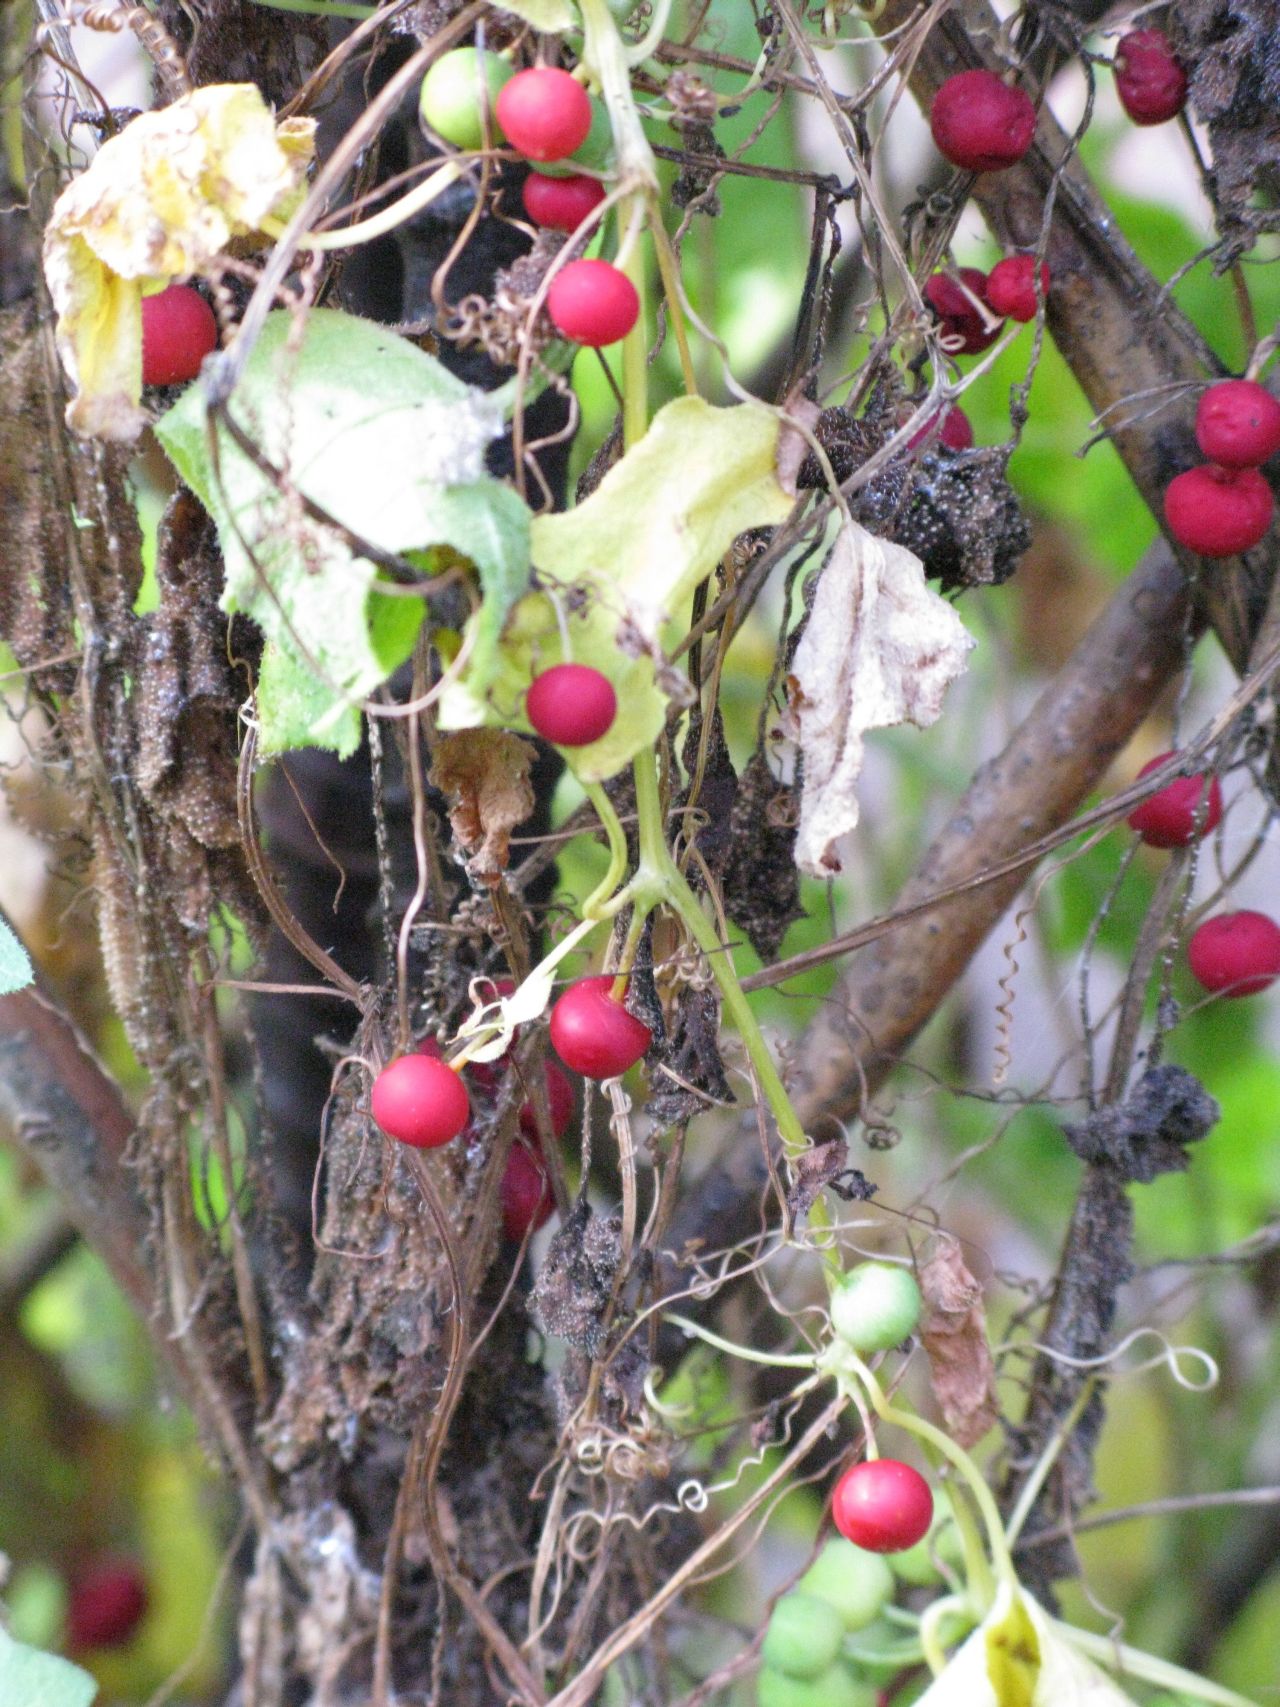 Red bryony vine in fruit in October